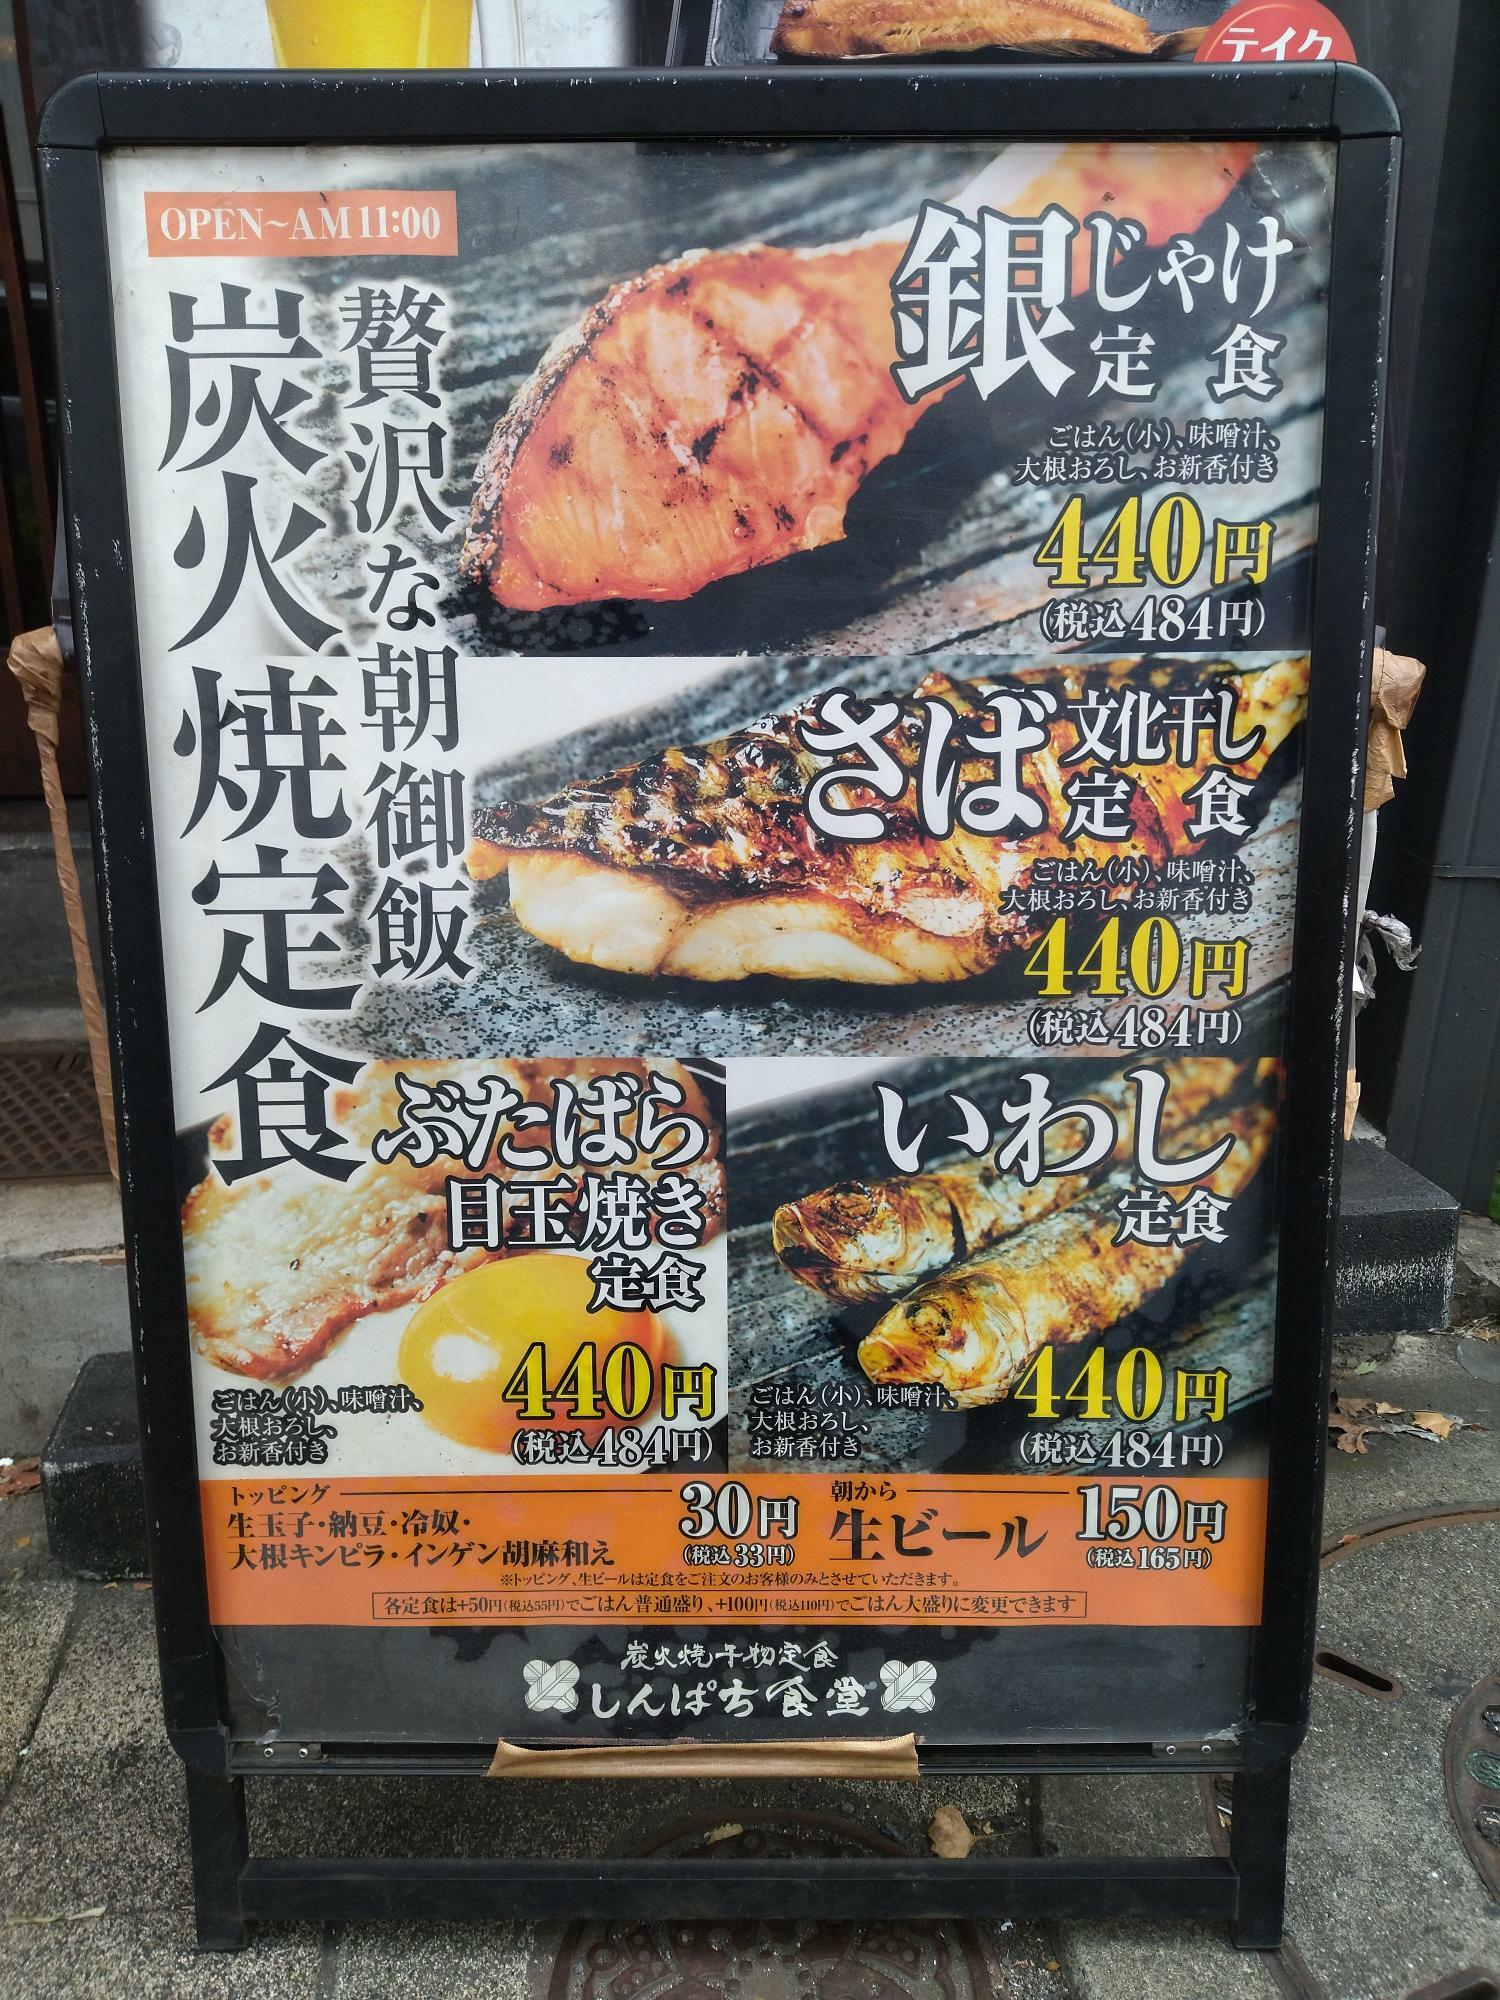 しんぱち食堂の朝御飯「炭火焼き定食」の店頭ポスター